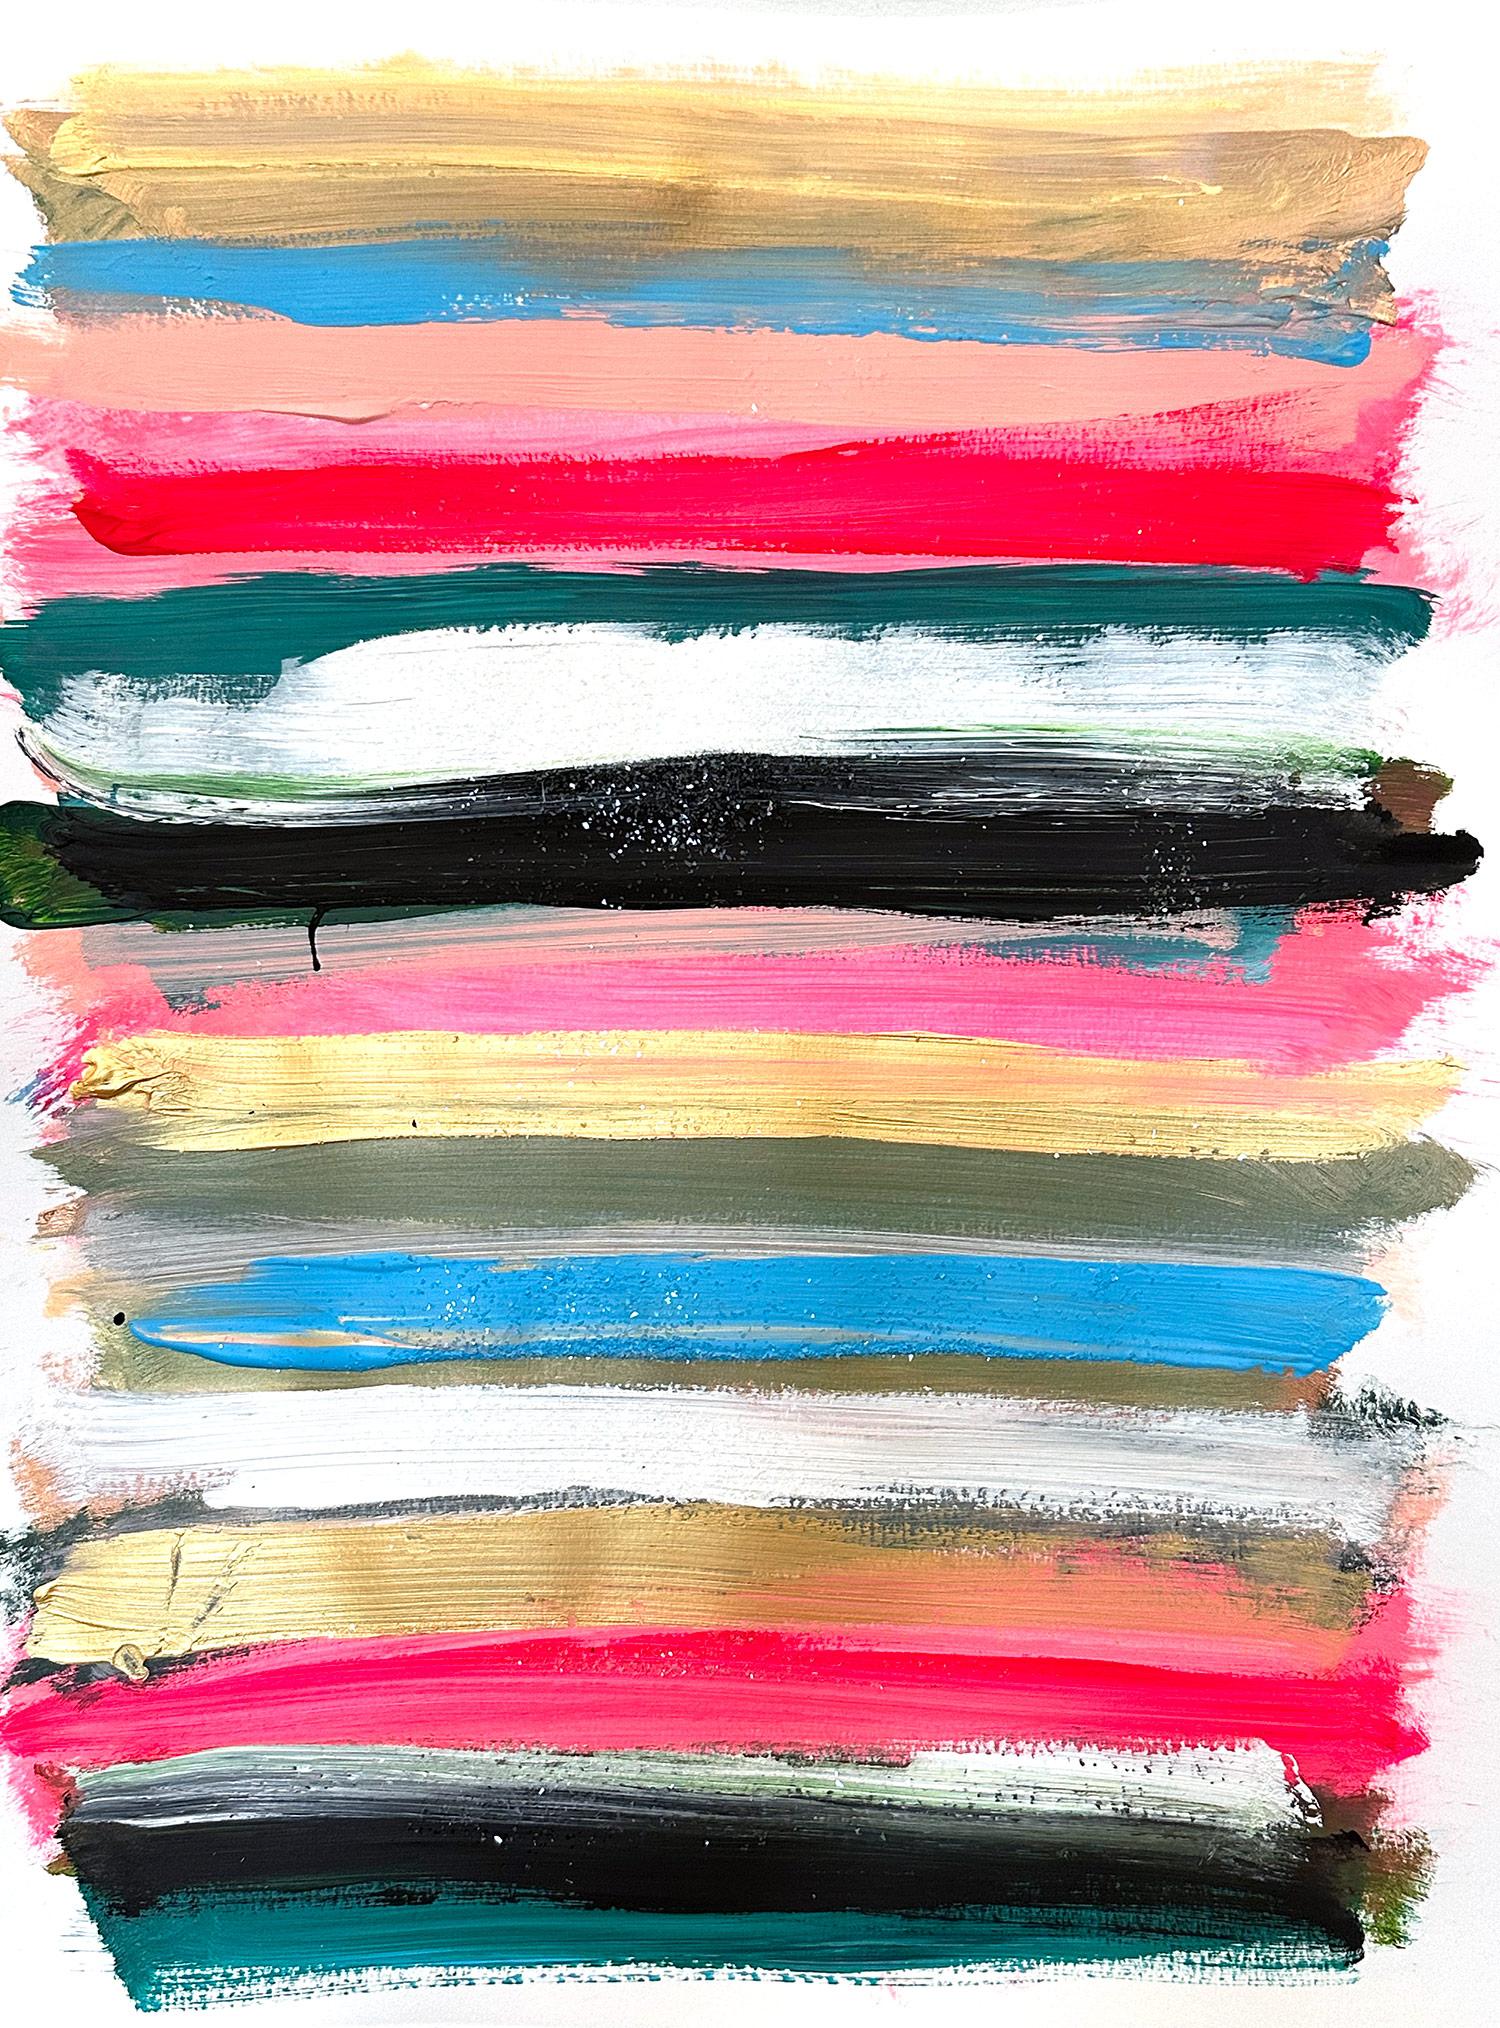 Abstract Painting Cindy Shaoul - "My Horizon - Hamptons Cocktail Party" Champ de couleur Papier peint contemporain